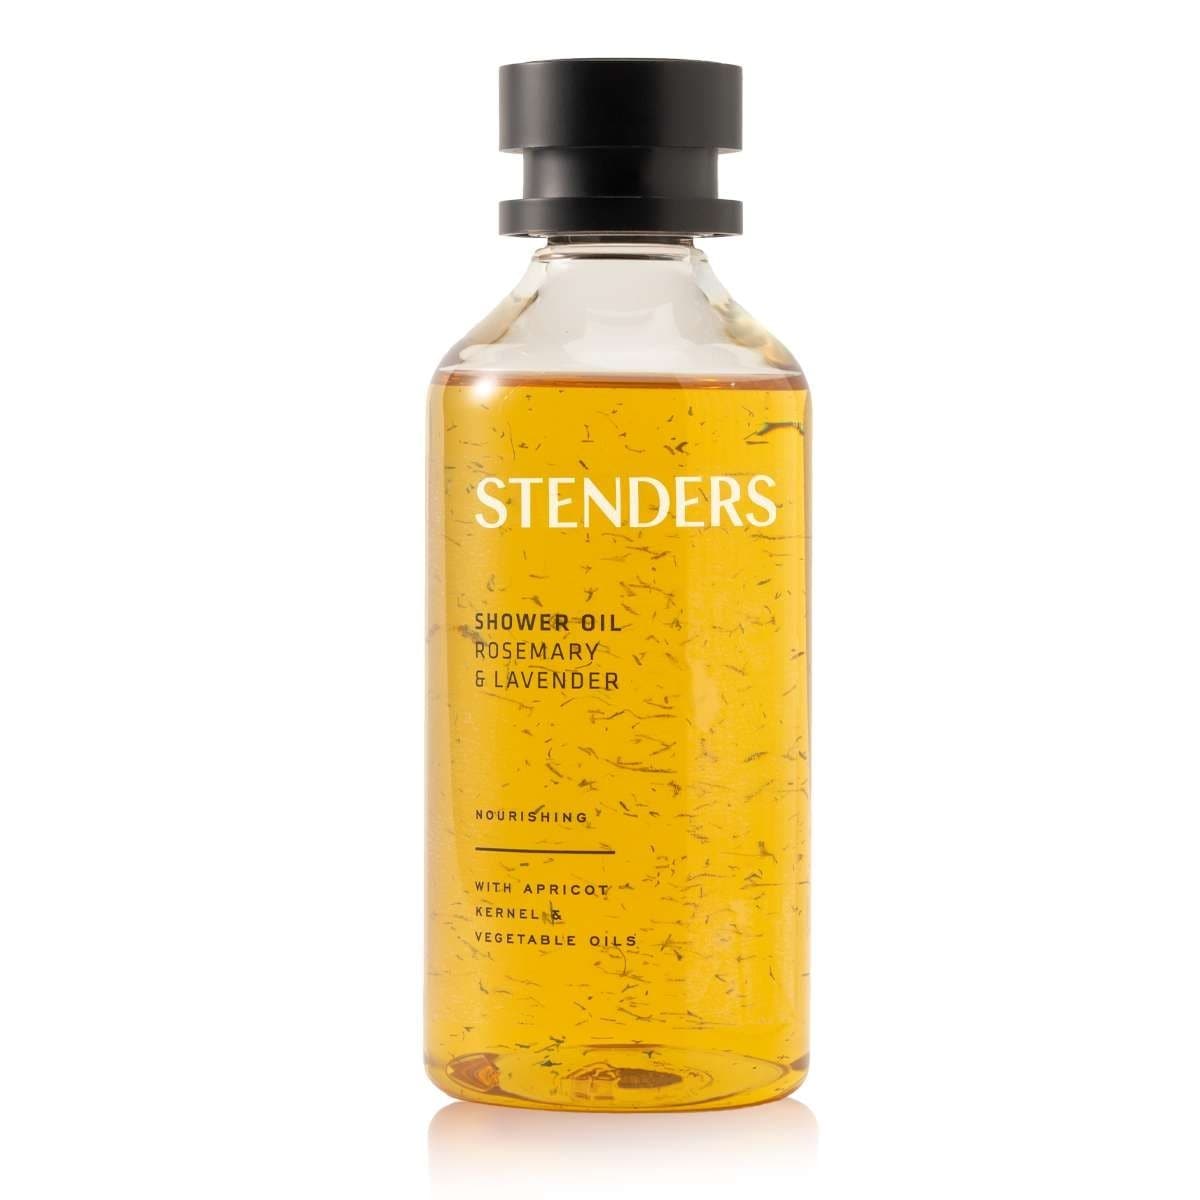 STENDERS Shower oil Rosemary & Lavender